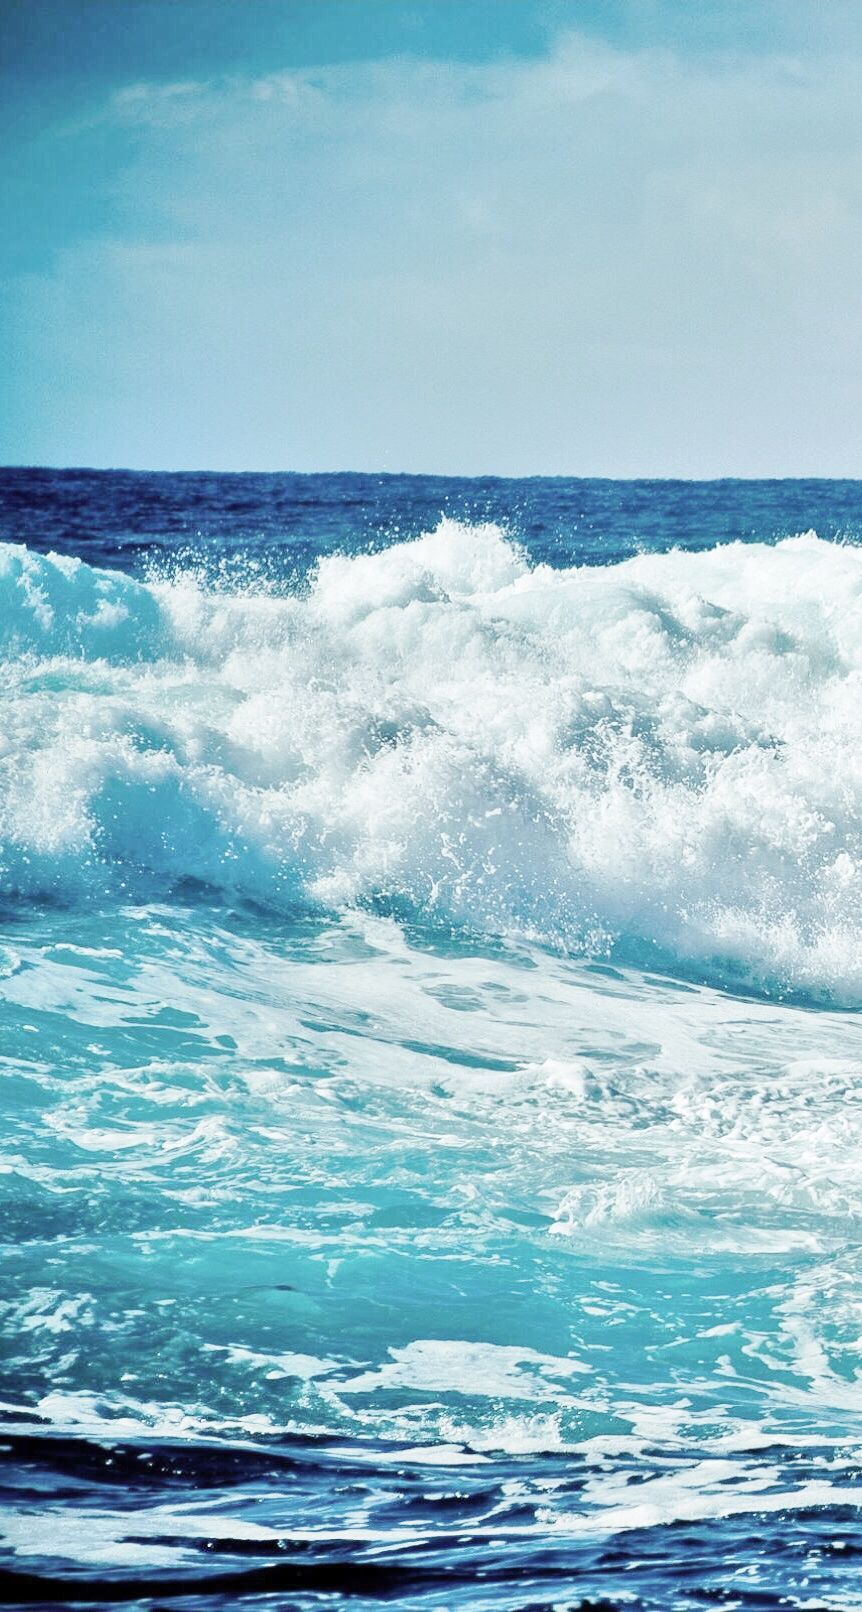 Ocean waves iphone wallpaper. Waves, Ocean scenes